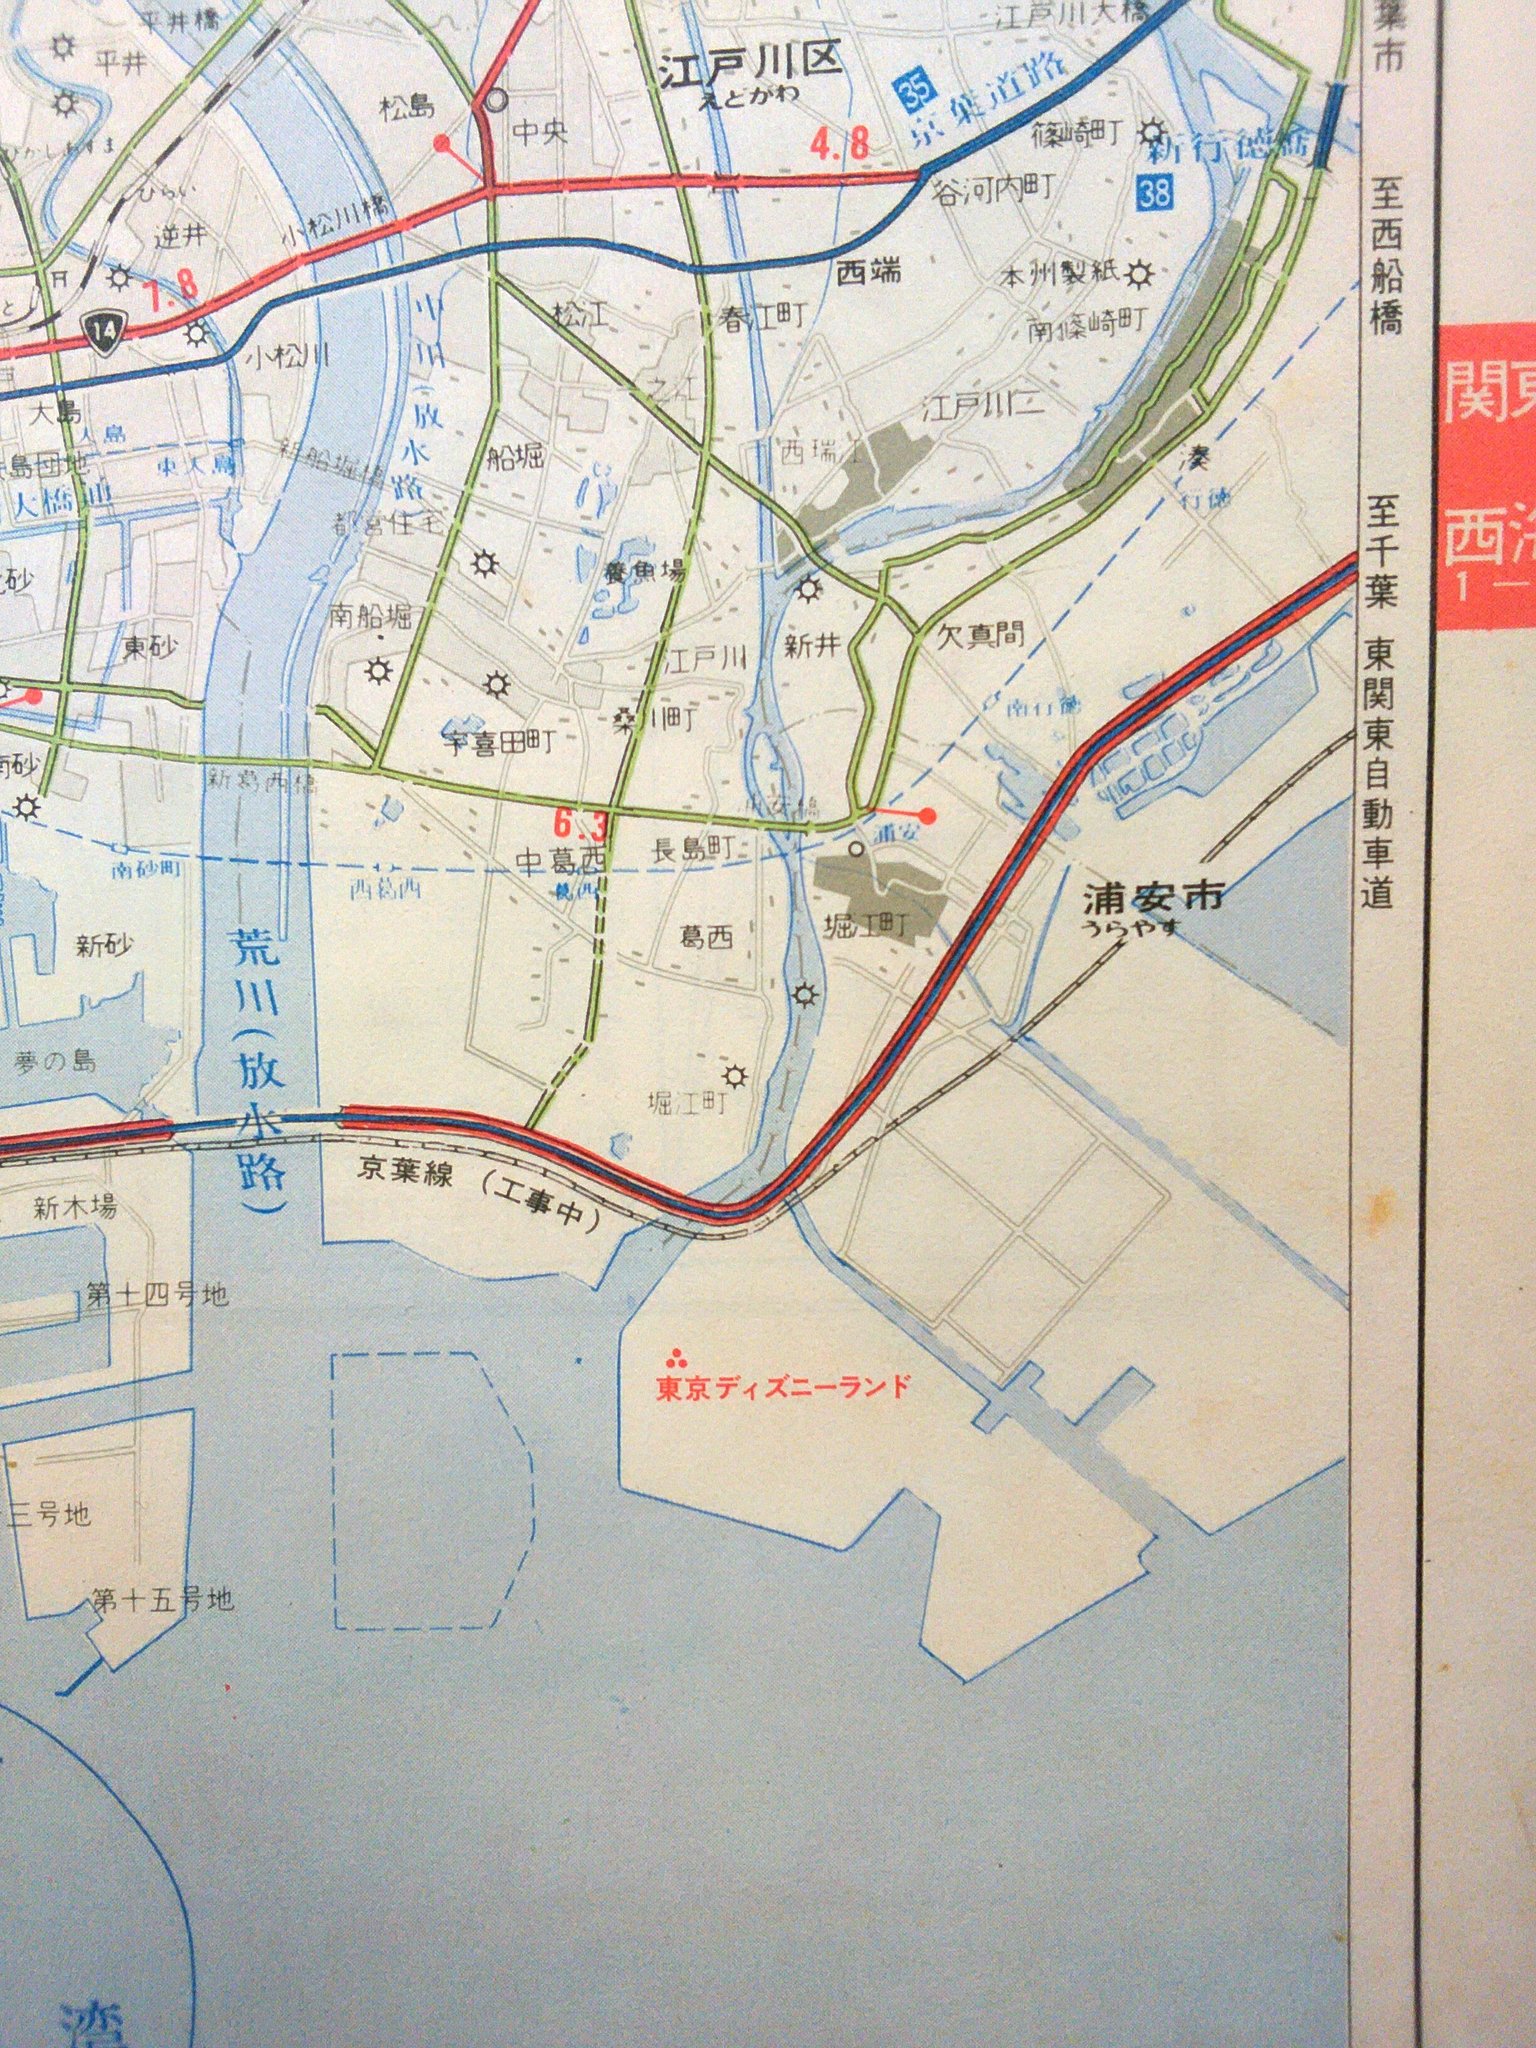 تويتر りーべ على تويتر 東京ディズニーランドが開園した直後の道路地図 当時京葉線はまだなかったので 最寄り駅は東西線の浦安駅だったようだ 昭和58年8月発行のユニオン新日本道路地図から ディズニー35周年 T Co Dgqj5mz0iw